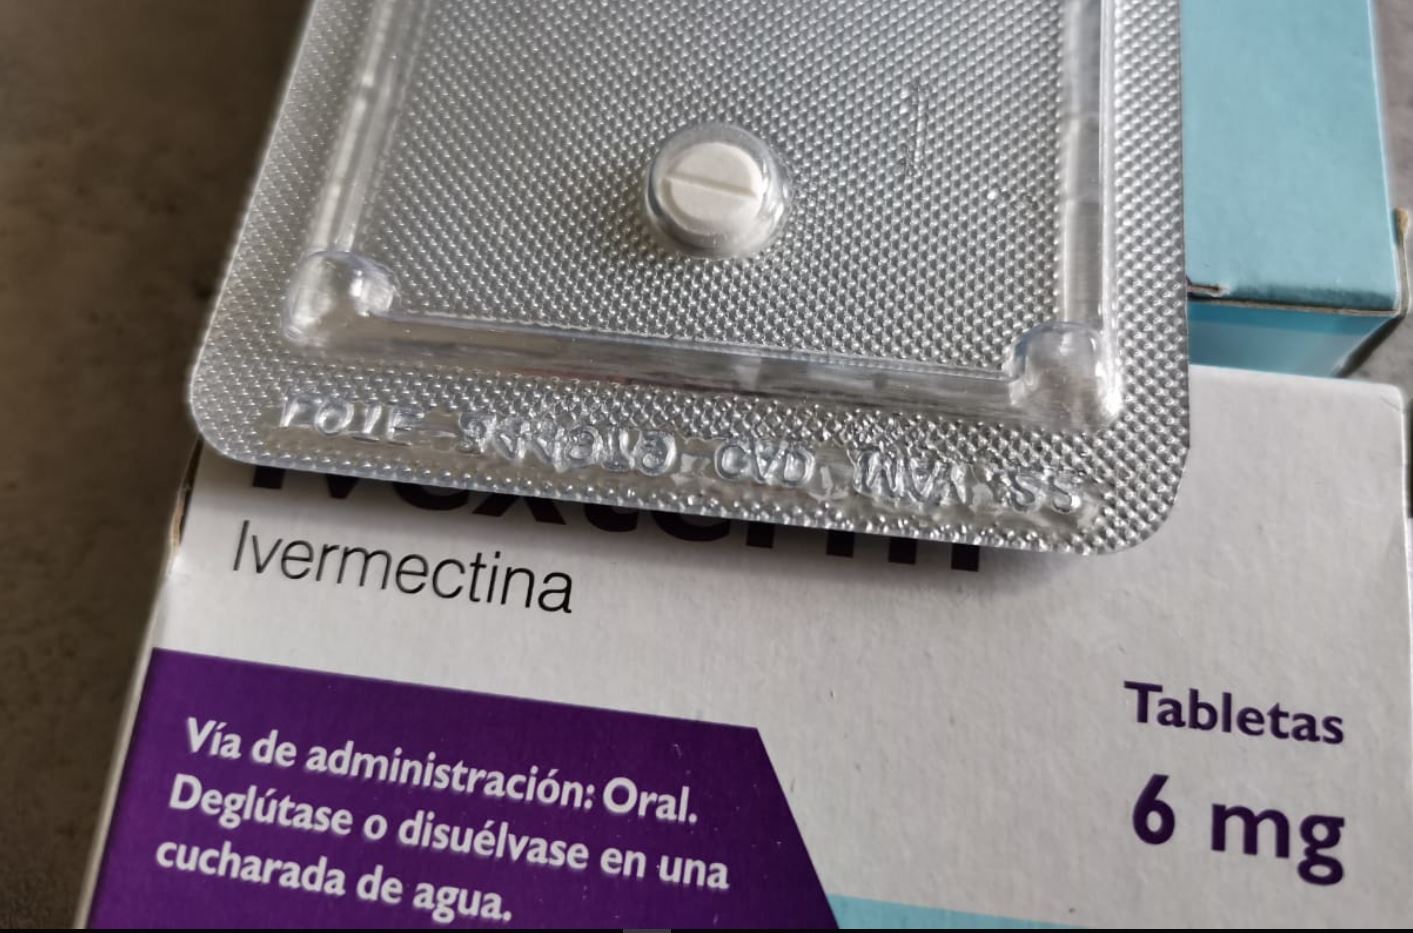 Pastillas de ivermectina que se han suministrado durante la pandemia, pero su efectividad está en estudio. (Foto Prensa Libre: Hemeroteca PL)